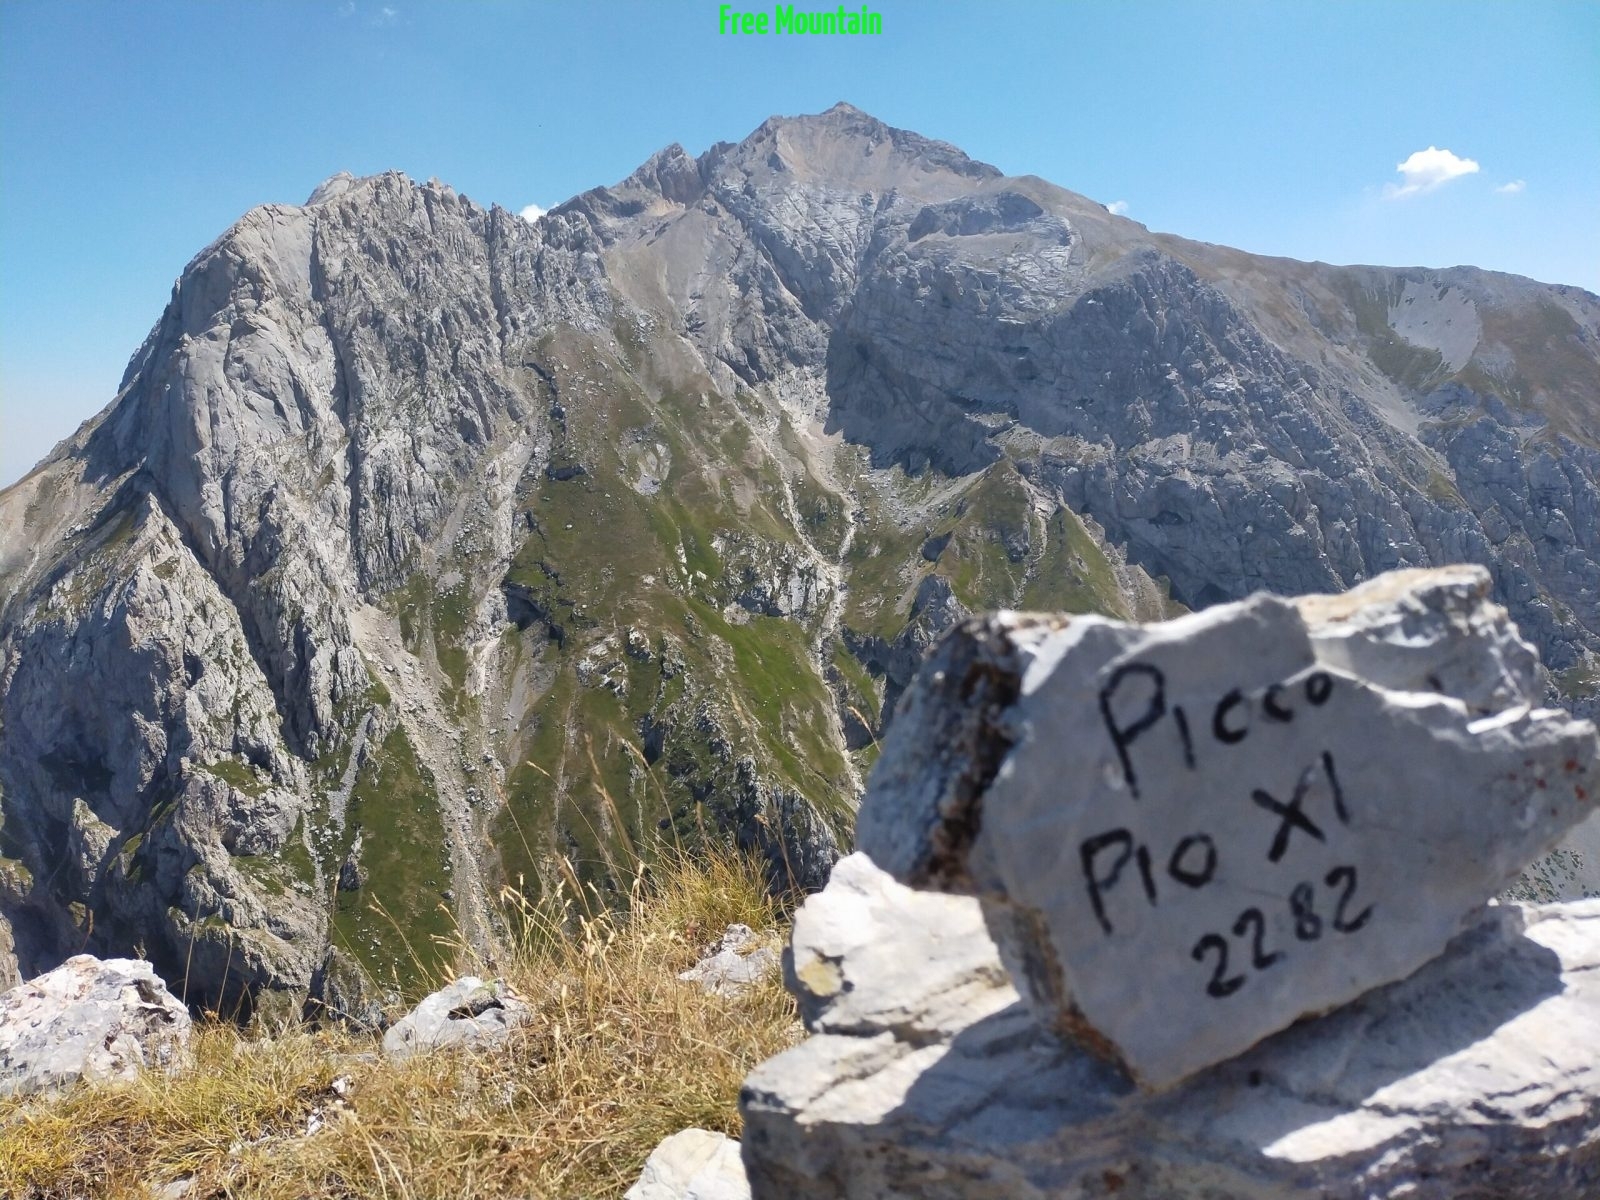 Foto Da Pietracamela a Picco Pio XI – Free Mountain